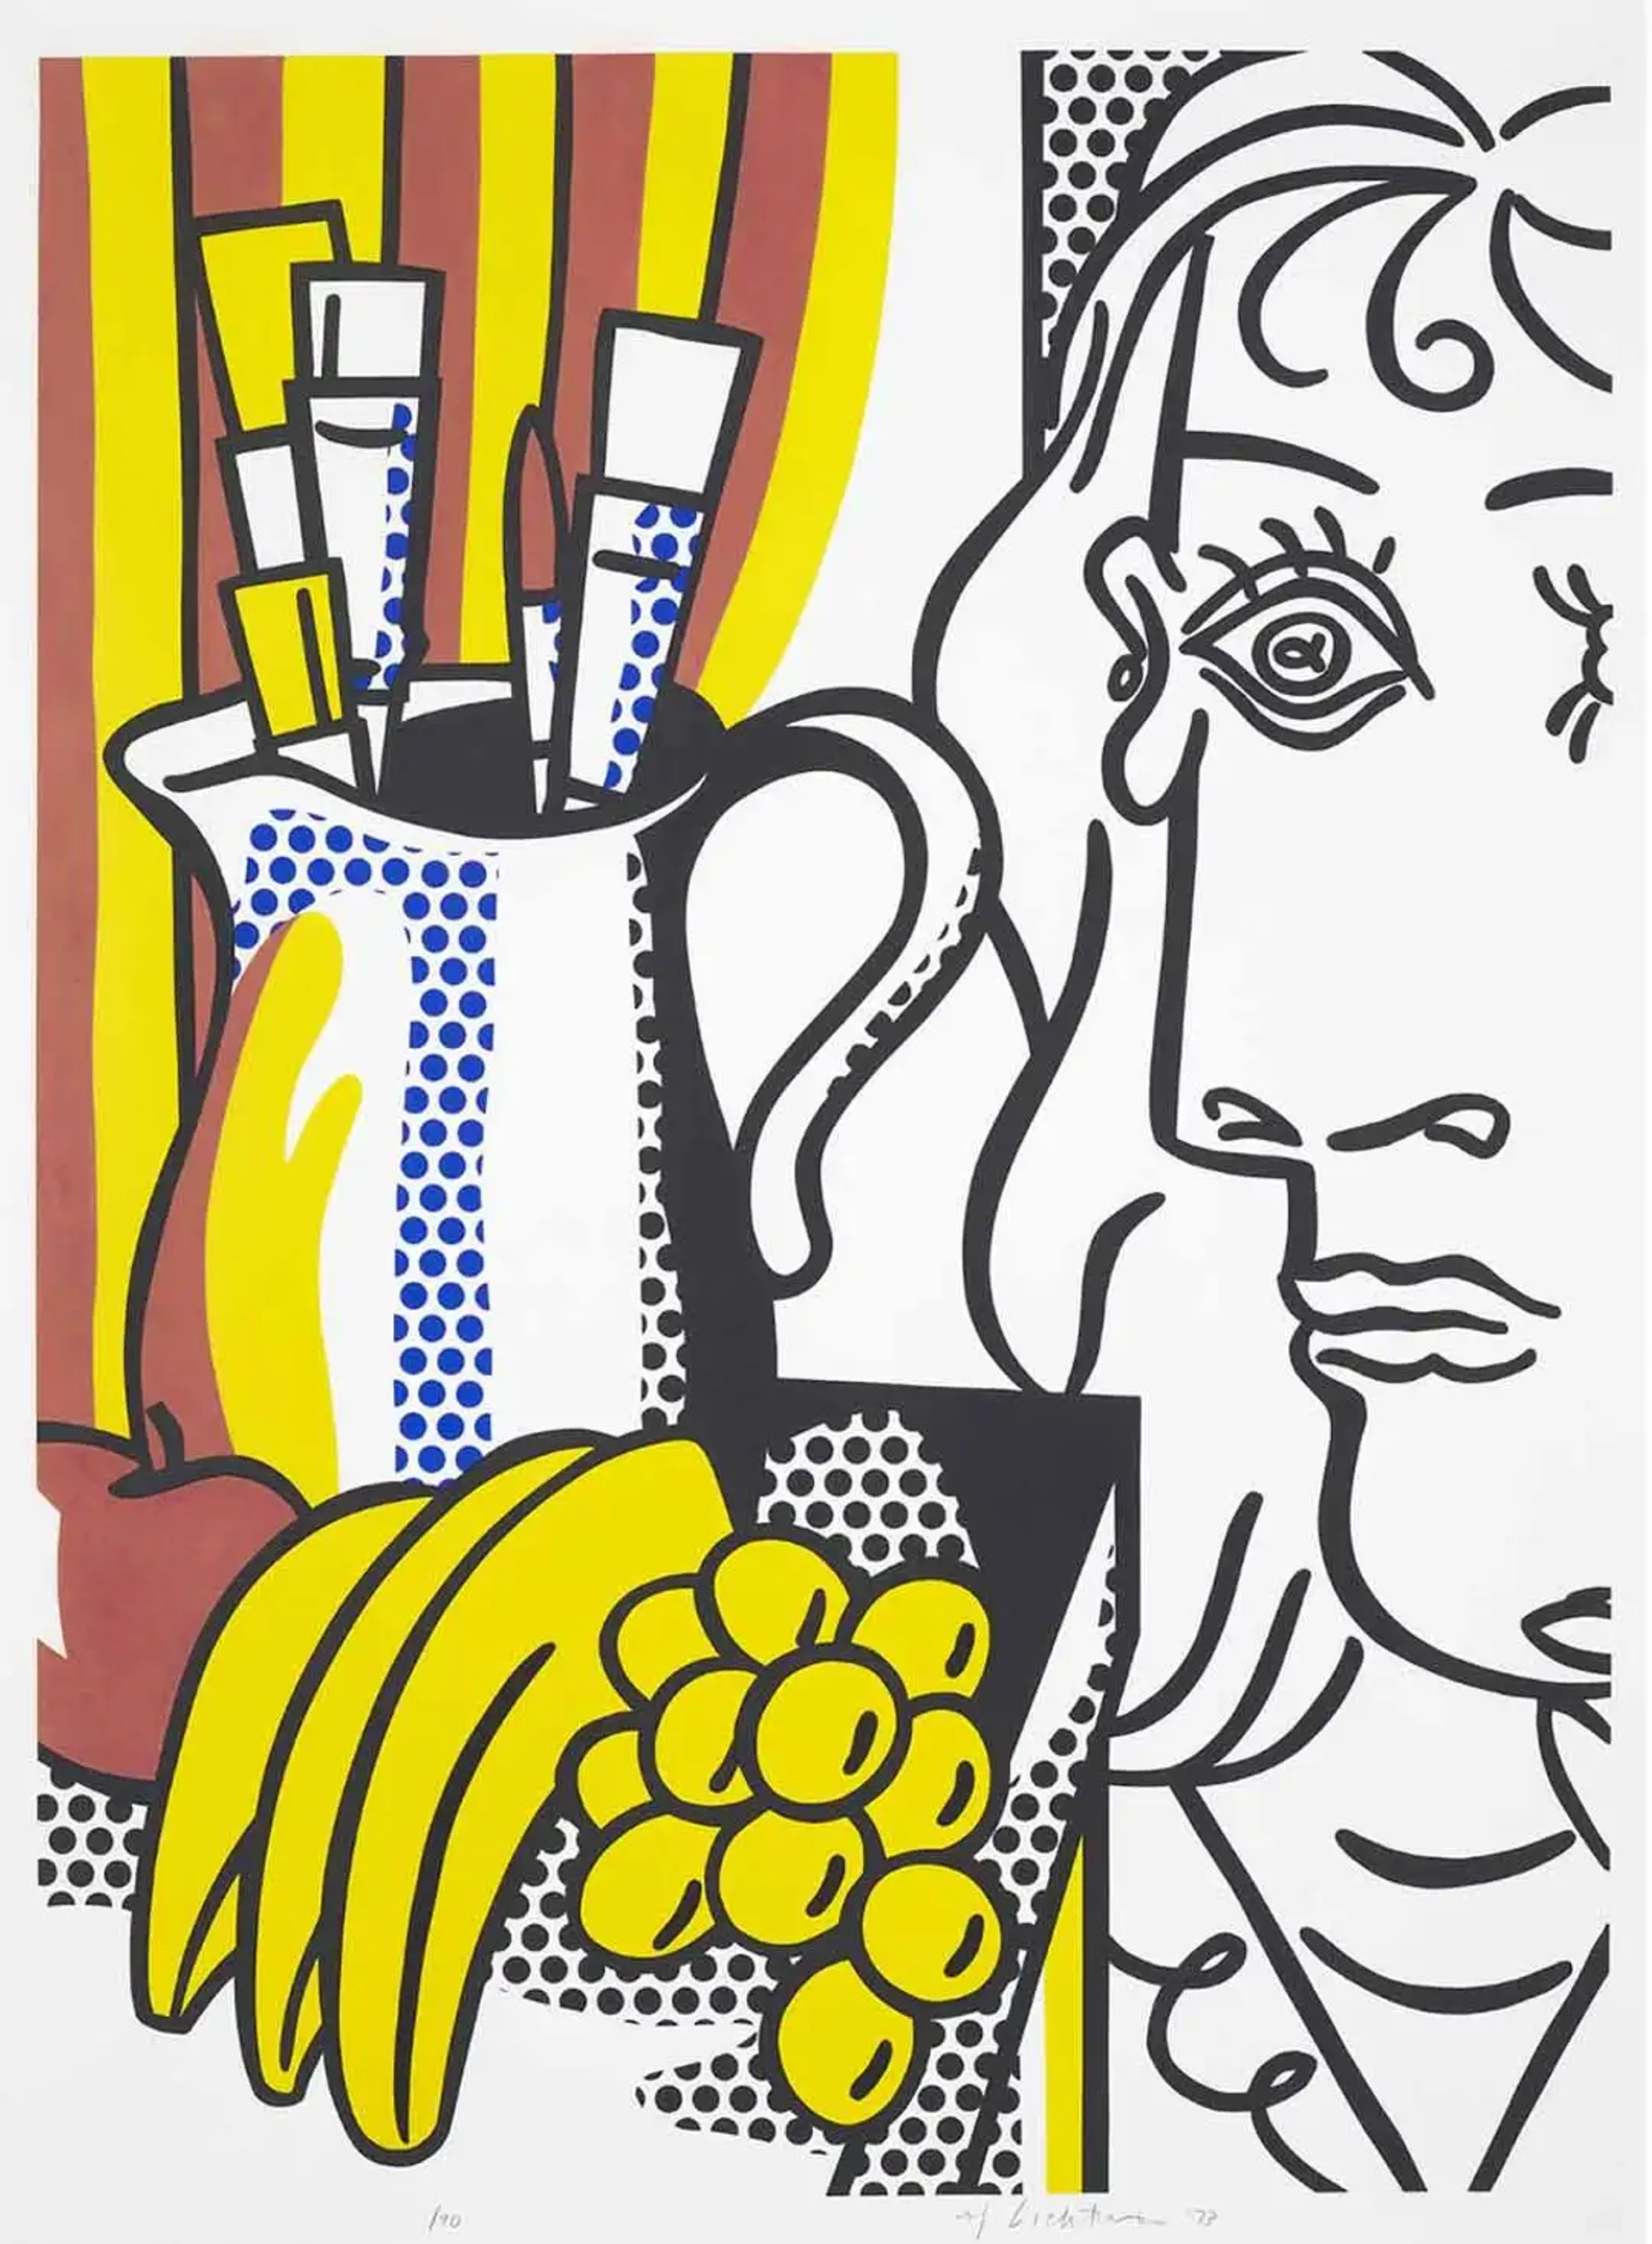 Roy Lichtenstein: Pop Art's Intellectual